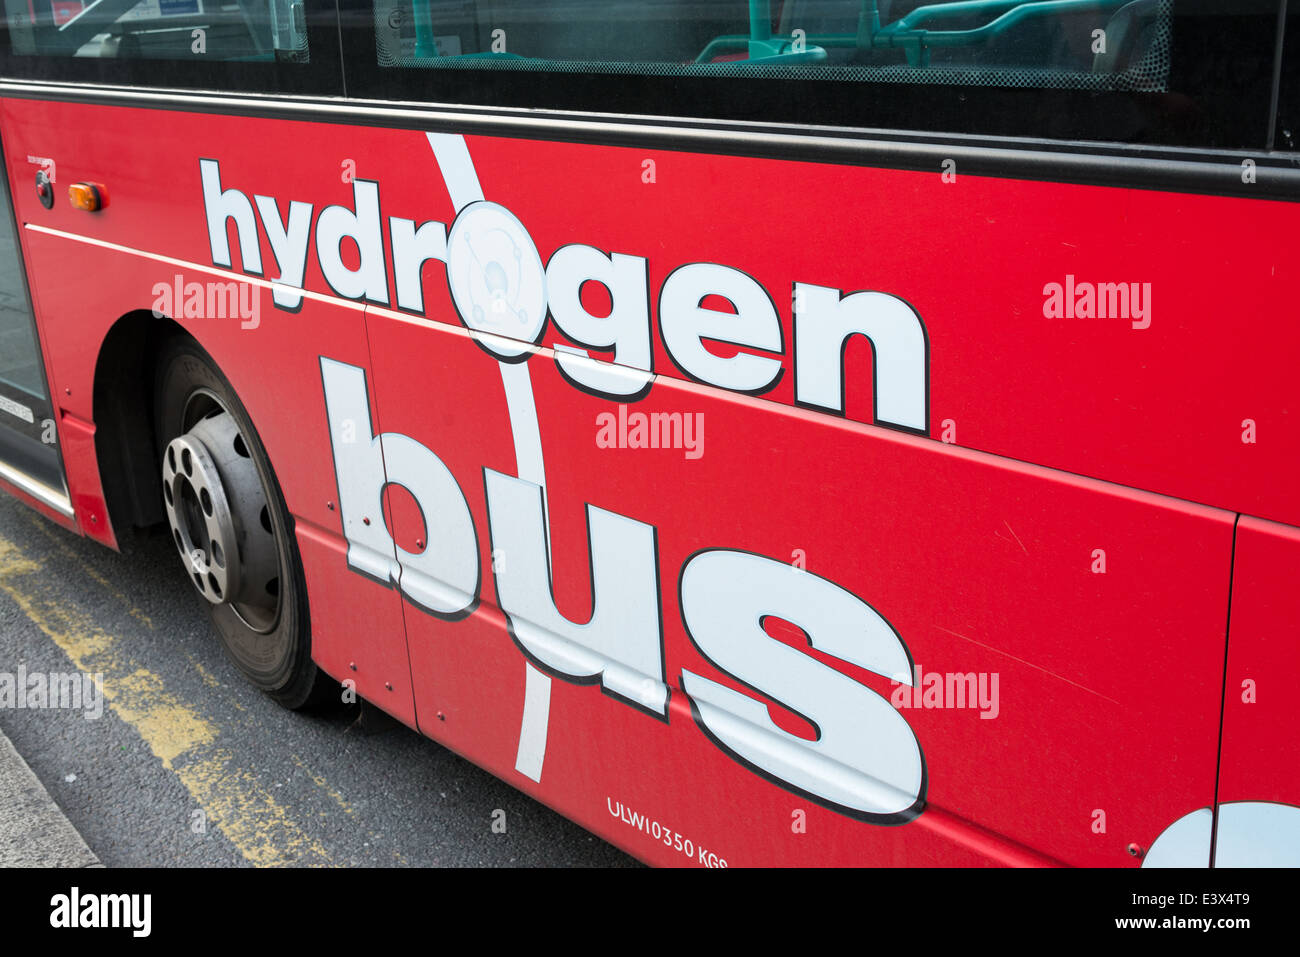 Bus à hydrogène powered, London, England, UK Banque D'Images